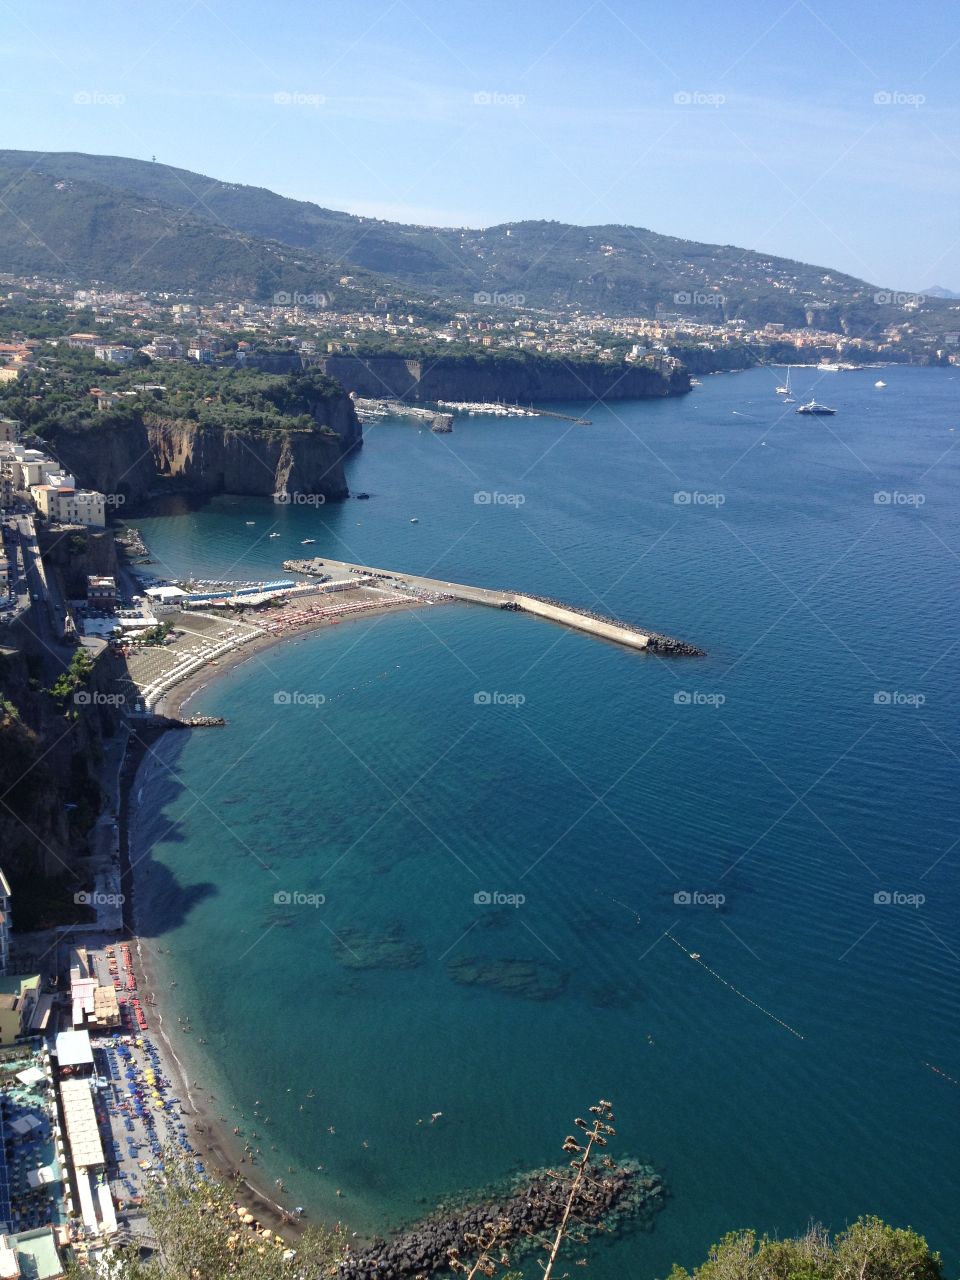 Italian paradise: the Amalfi Coast